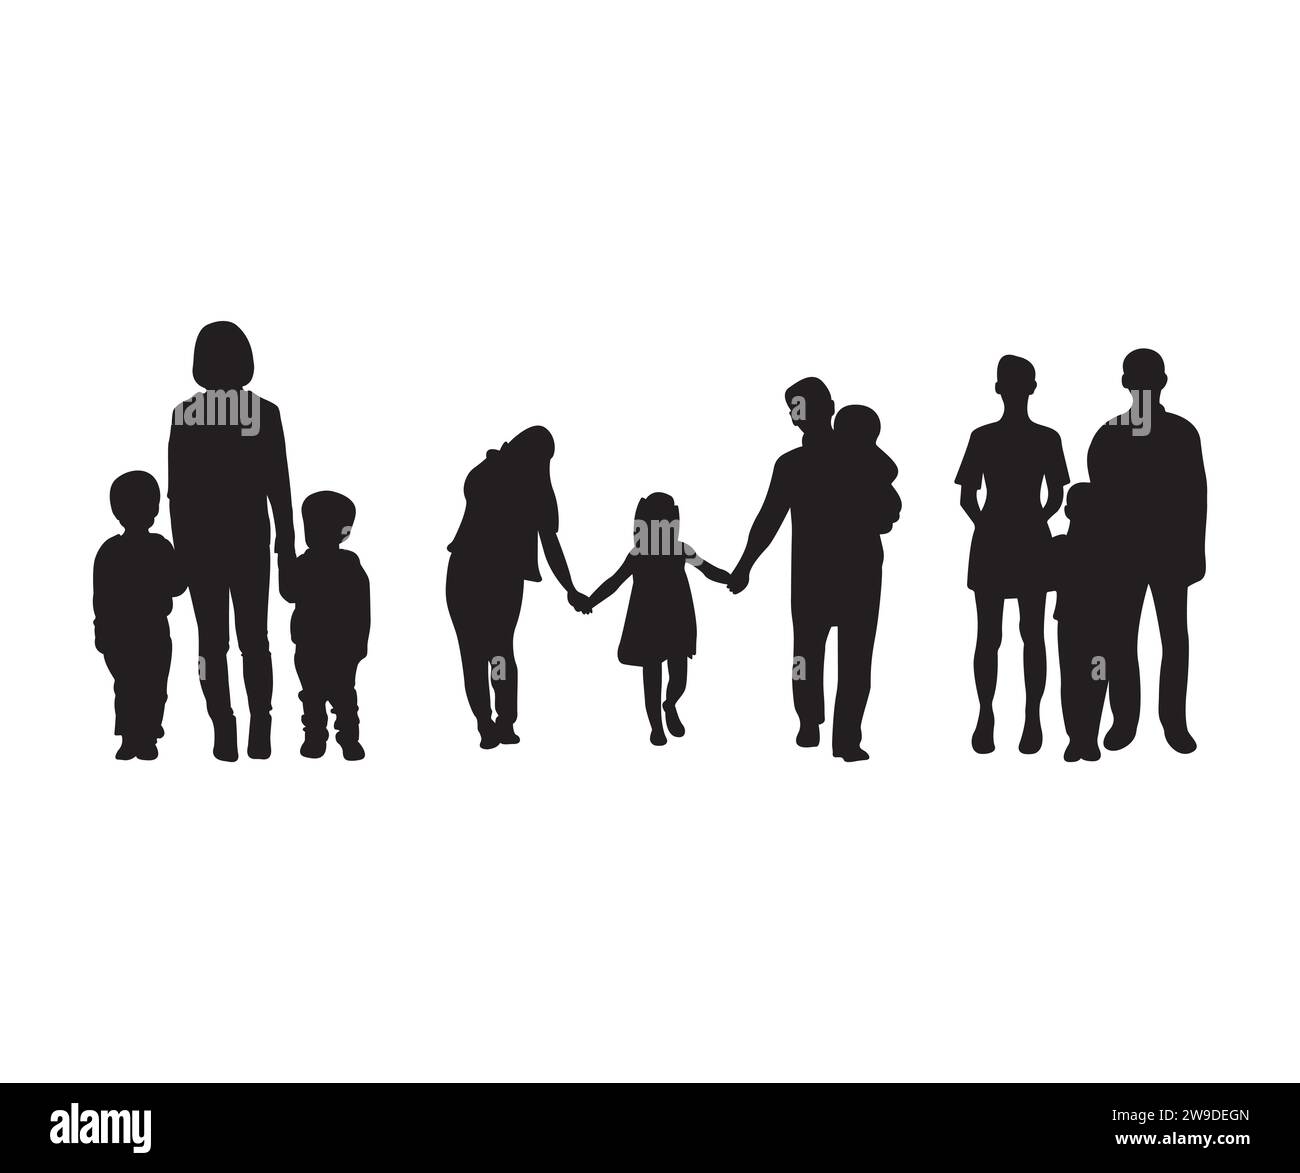 Family Vector, Family SVG Bundle, People Vector, Family silhouette, Family Love, padre e figli, vettore famiglia, pacchetto famiglia Illustrazione Vettoriale